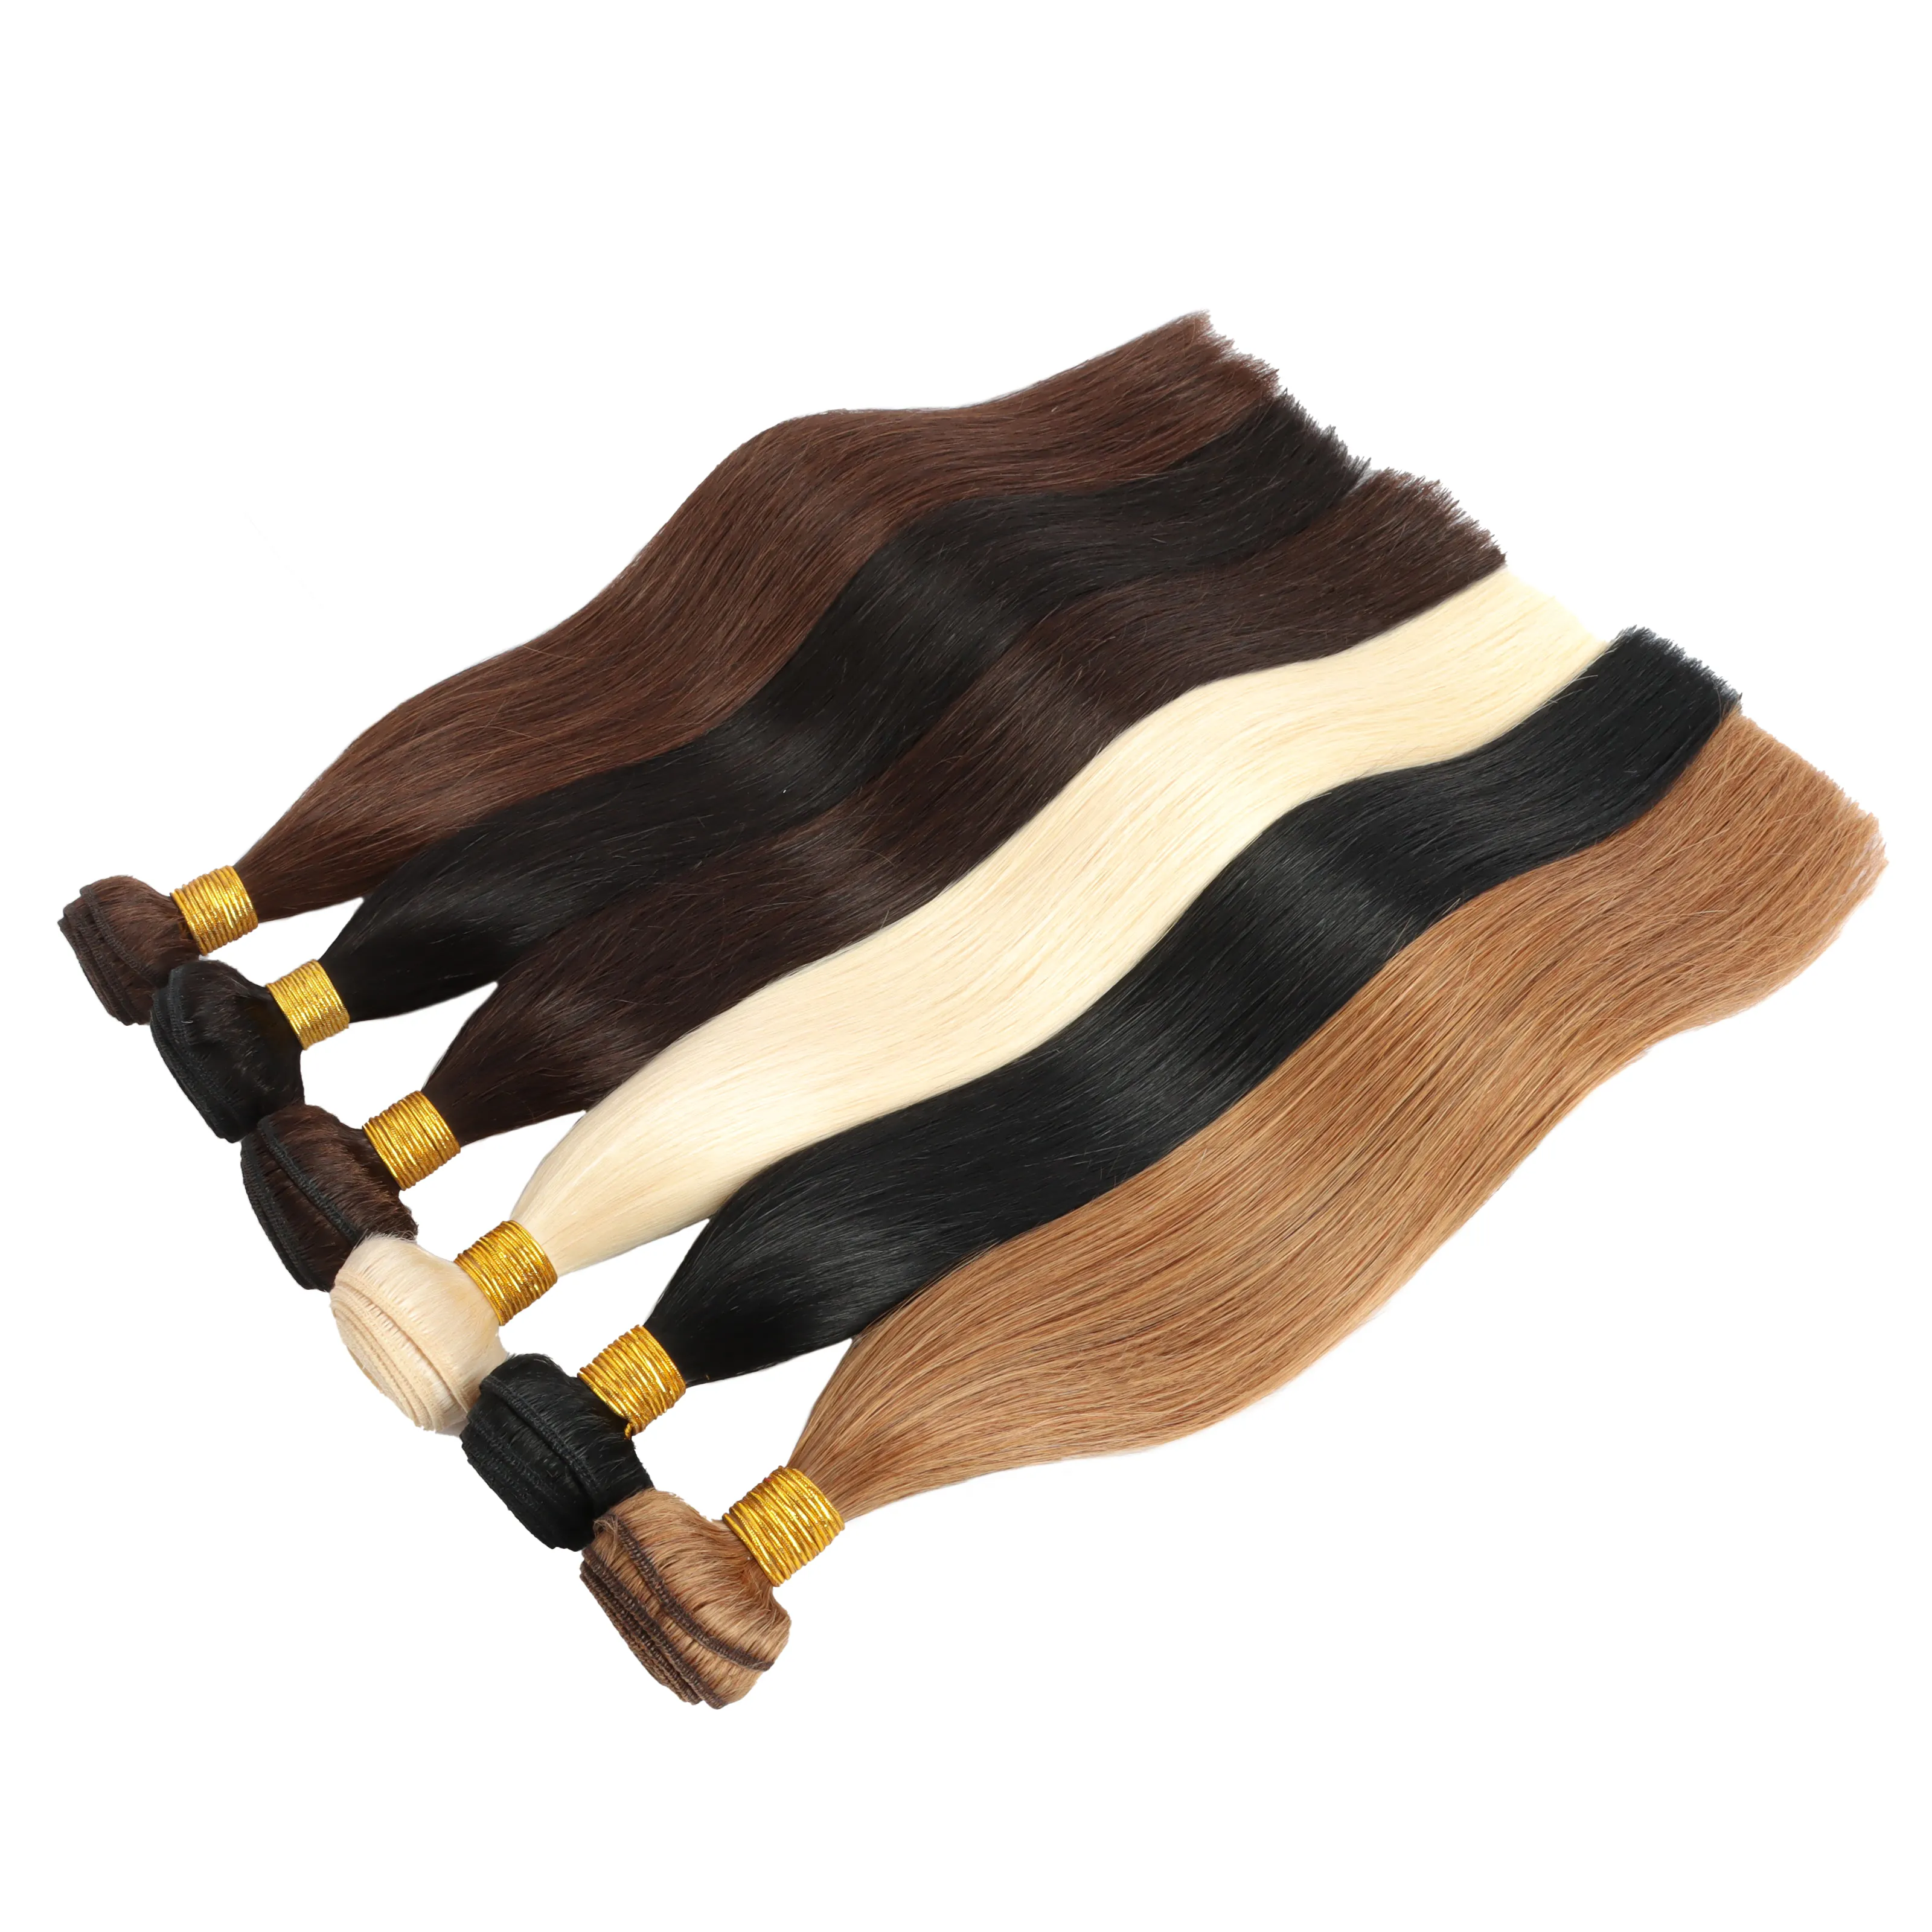 I capelli vergini grezzi brasiliani all'ingrosso impacchettano i fornitori di capelli del fascio di capelli umani allineati alla cuticola